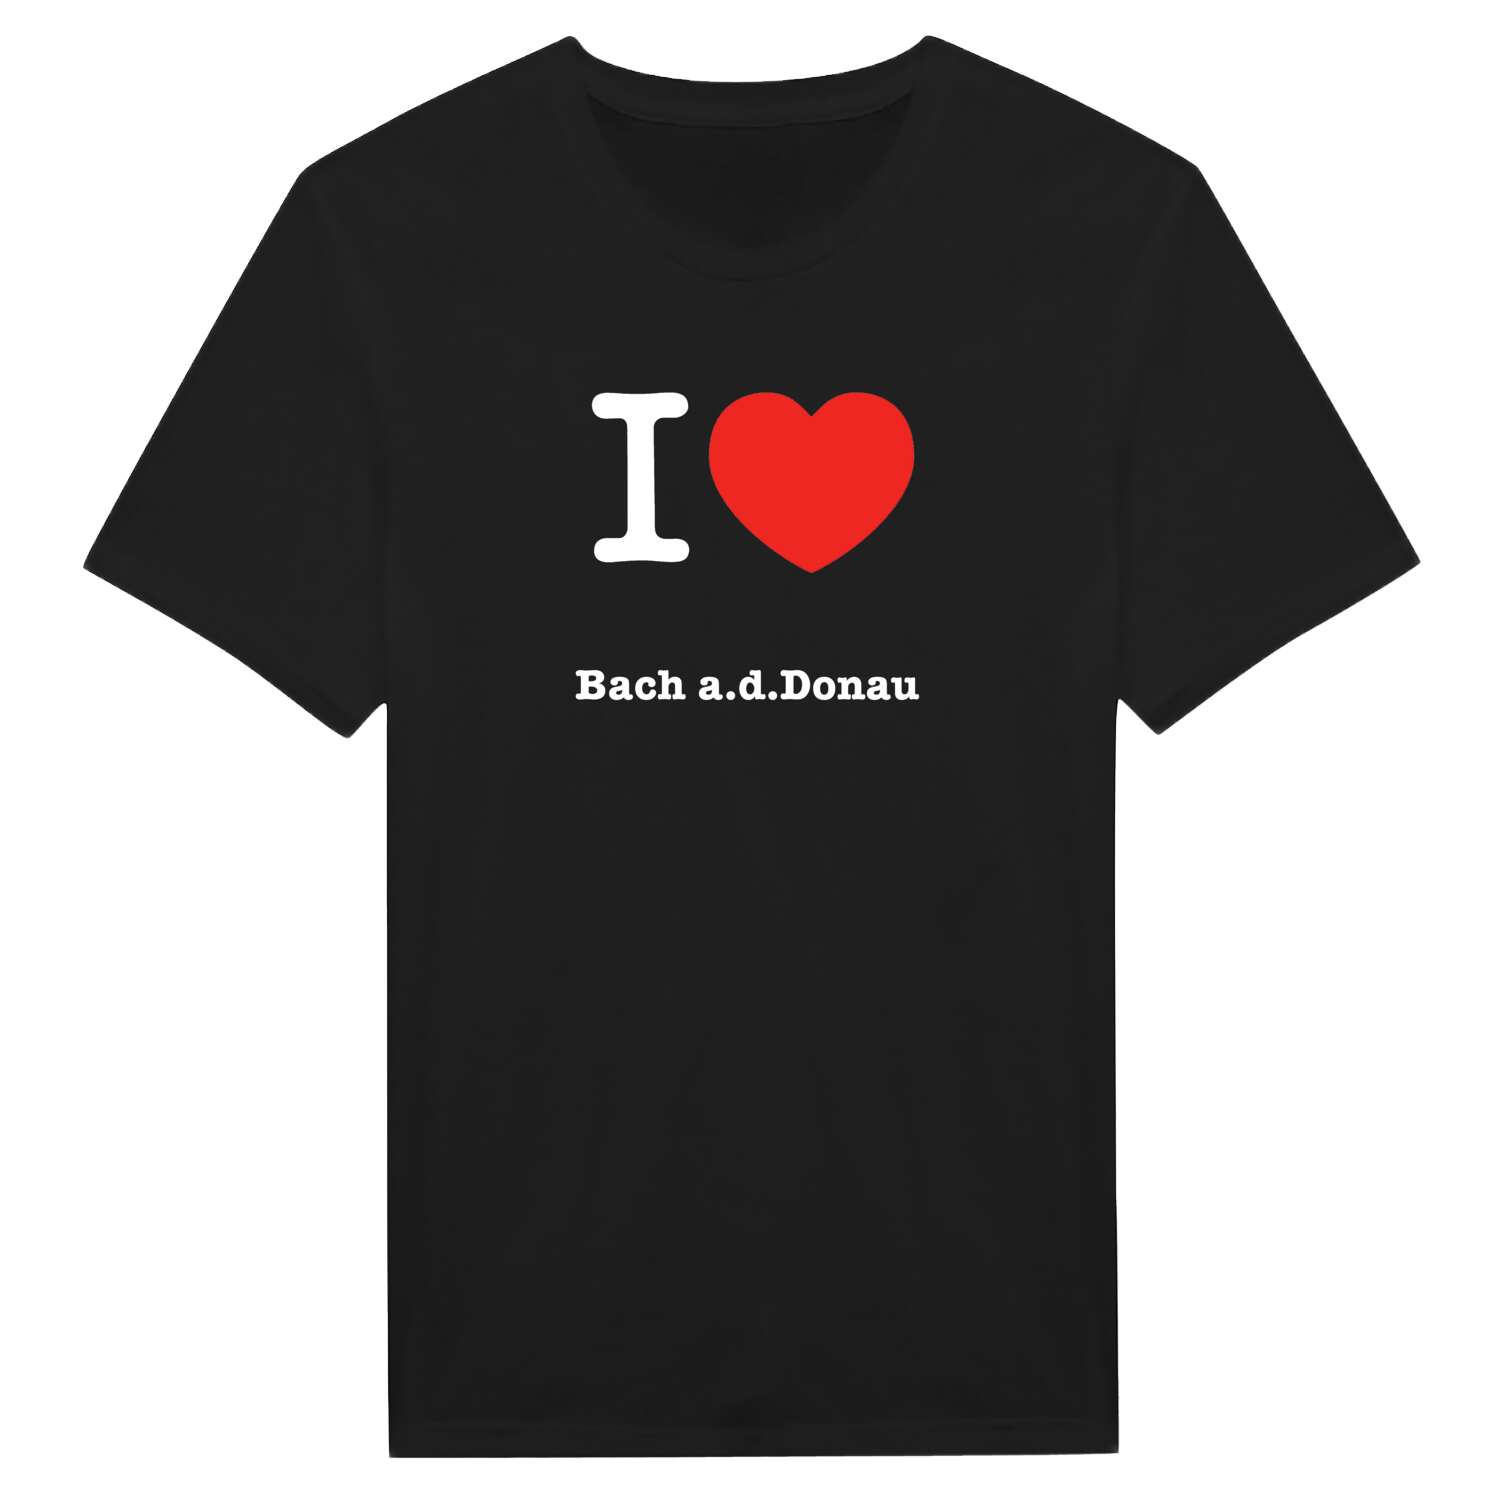 Bach a.d.Donau T-Shirt »I love«